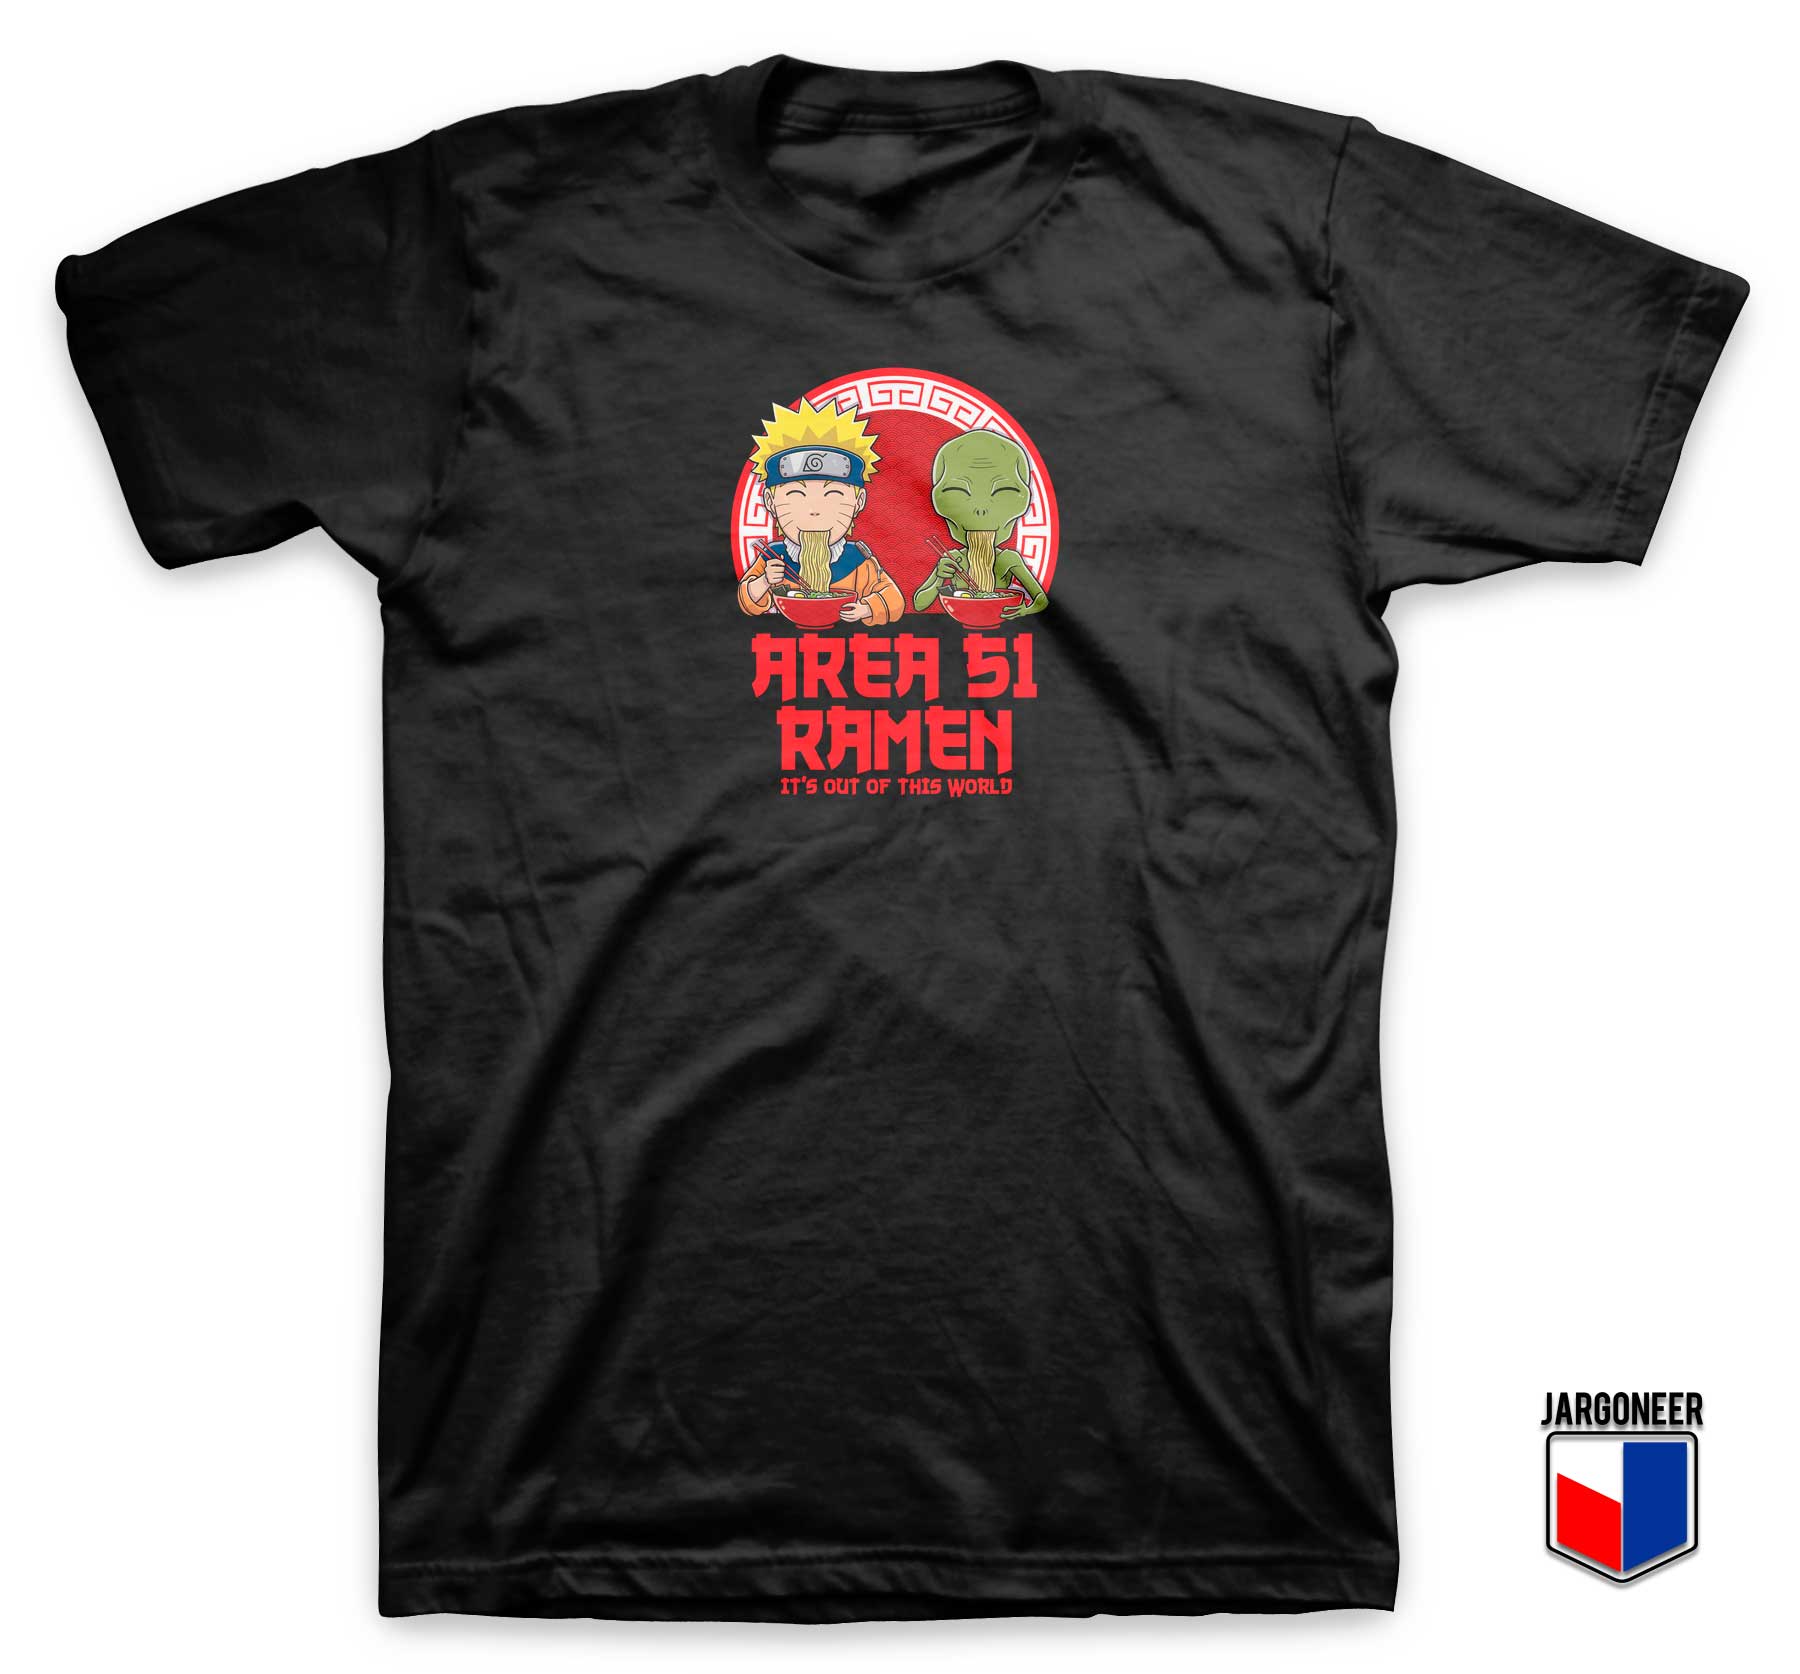 Area 51 Ramen T Shirt - Shop Unique Graphic Cool Shirt Designs